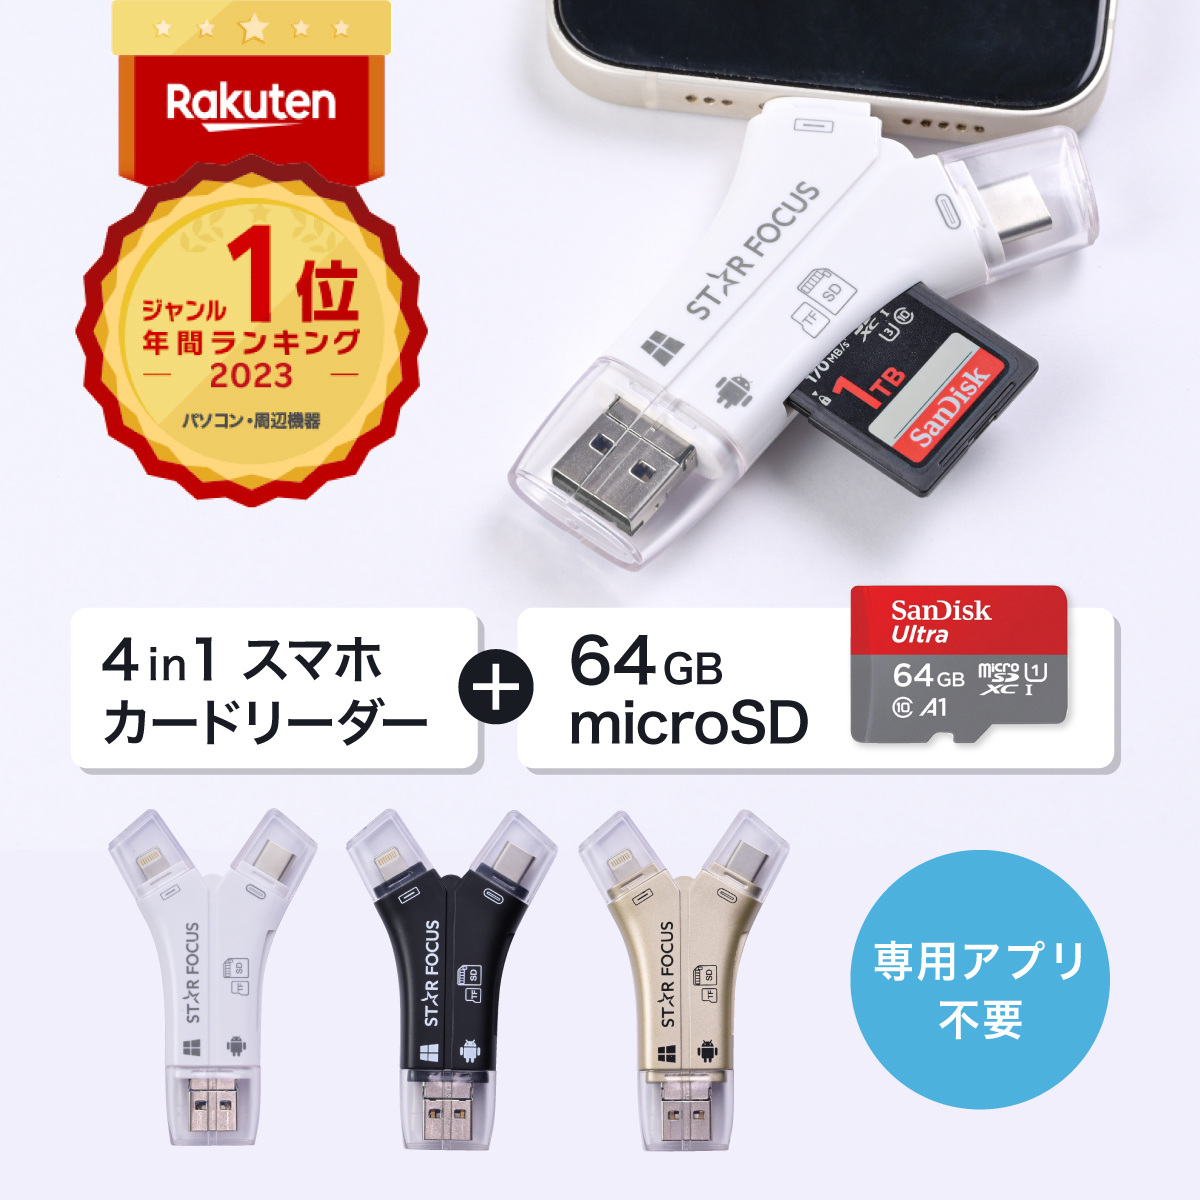 【マイクロSDカード 64GBセット】楽天年間1位 スターフォーカス 正規品 送料無料 1年保証 日本語取説付 1TB対応 SDカードリーダー  iPhone バックアップ USB USBメモリ 写真 microSDカードリーダー データ SDカードカメラリーダー |  スマホメモリ専門スターフォーカス